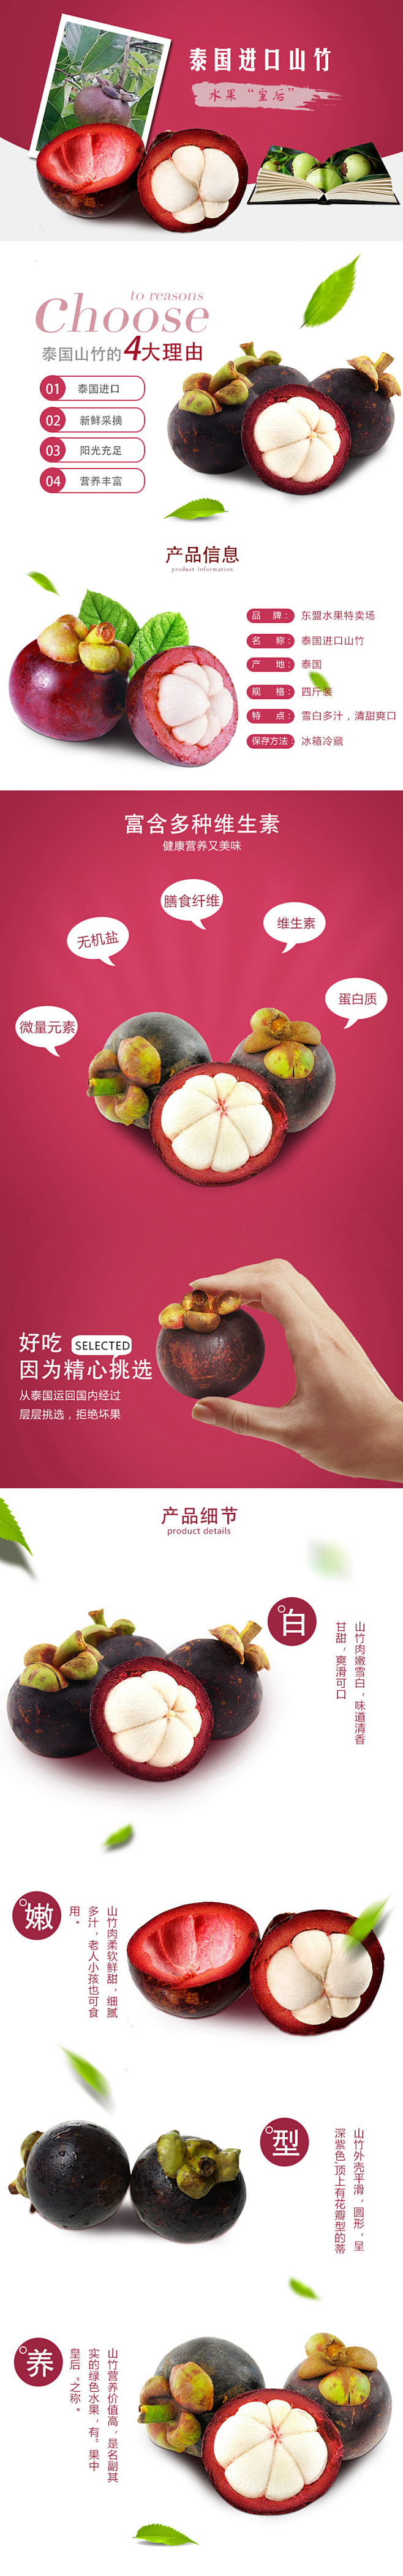 水果 山竹 食品详情页设计